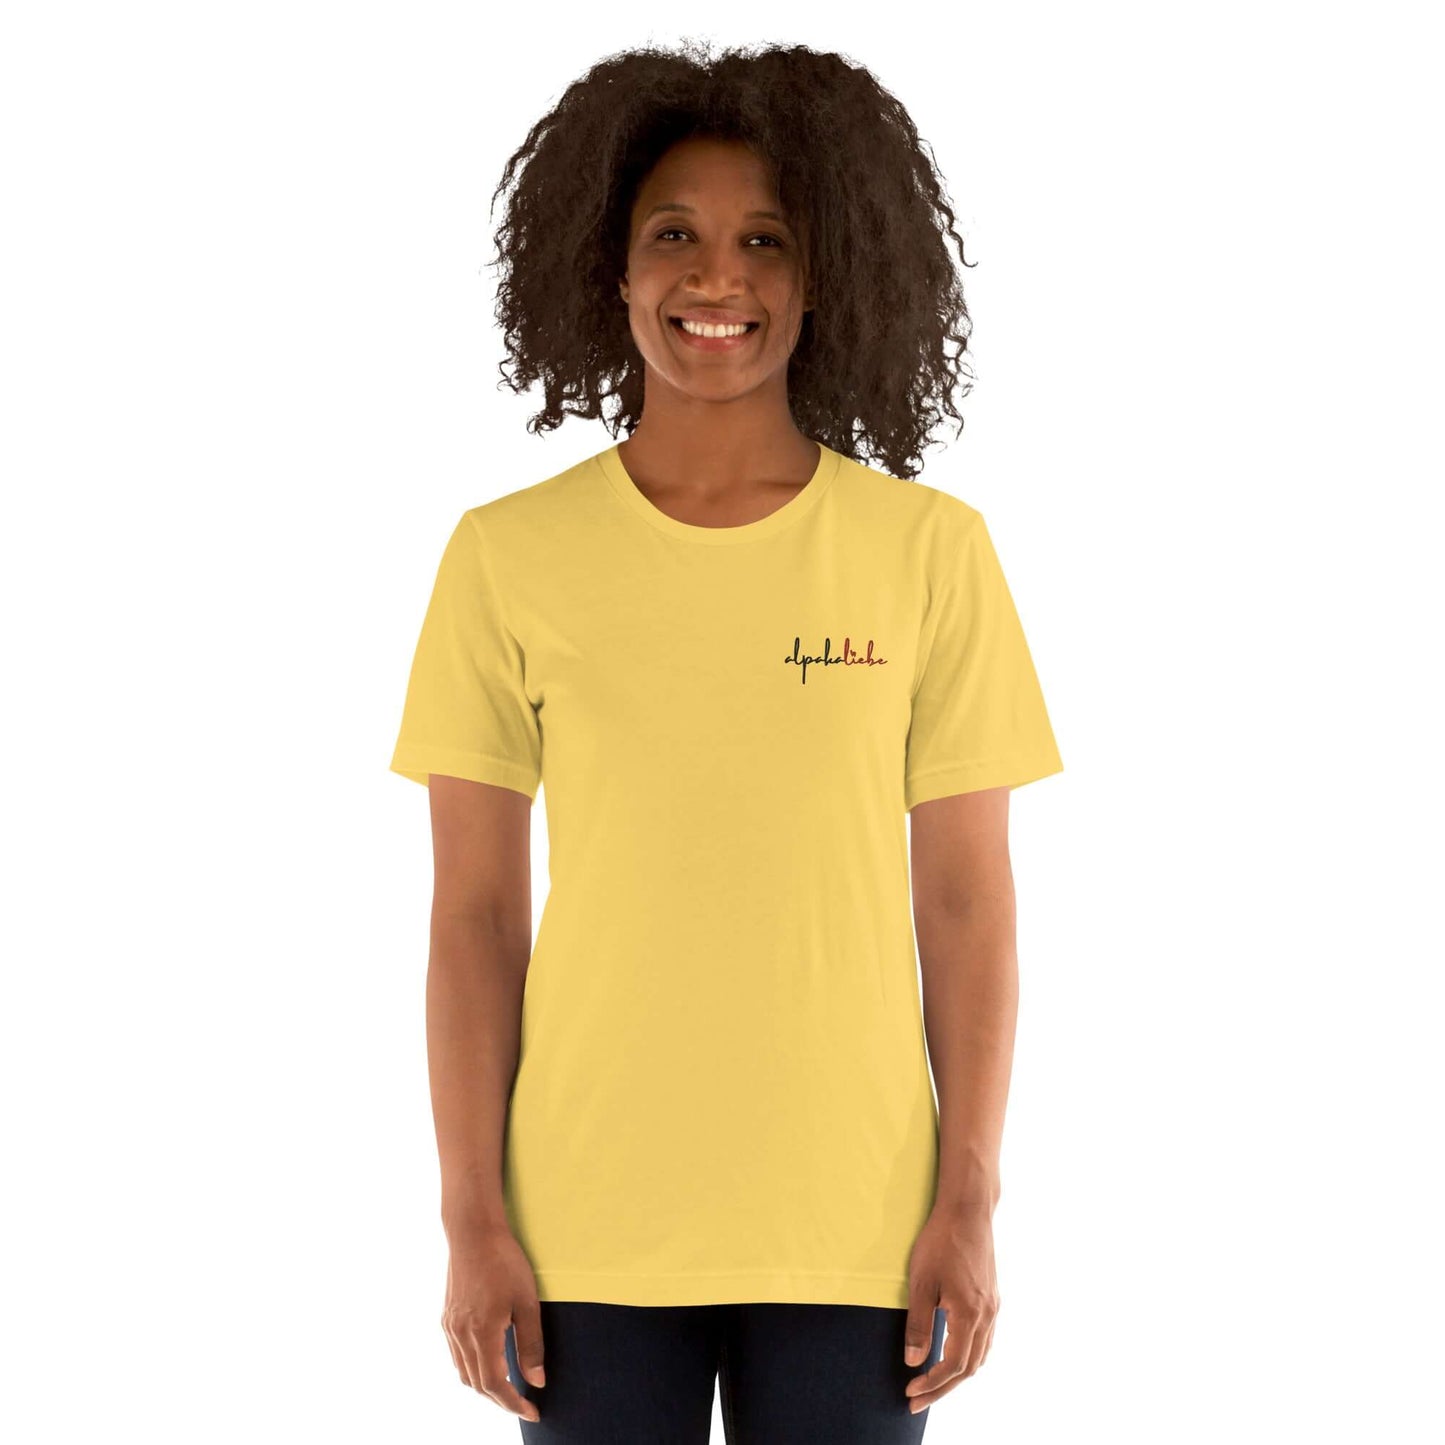 Elegantes T-Shirt mit 'alpakaliebe' Stickerei – Ideal für Alpaka-Liebhaber.